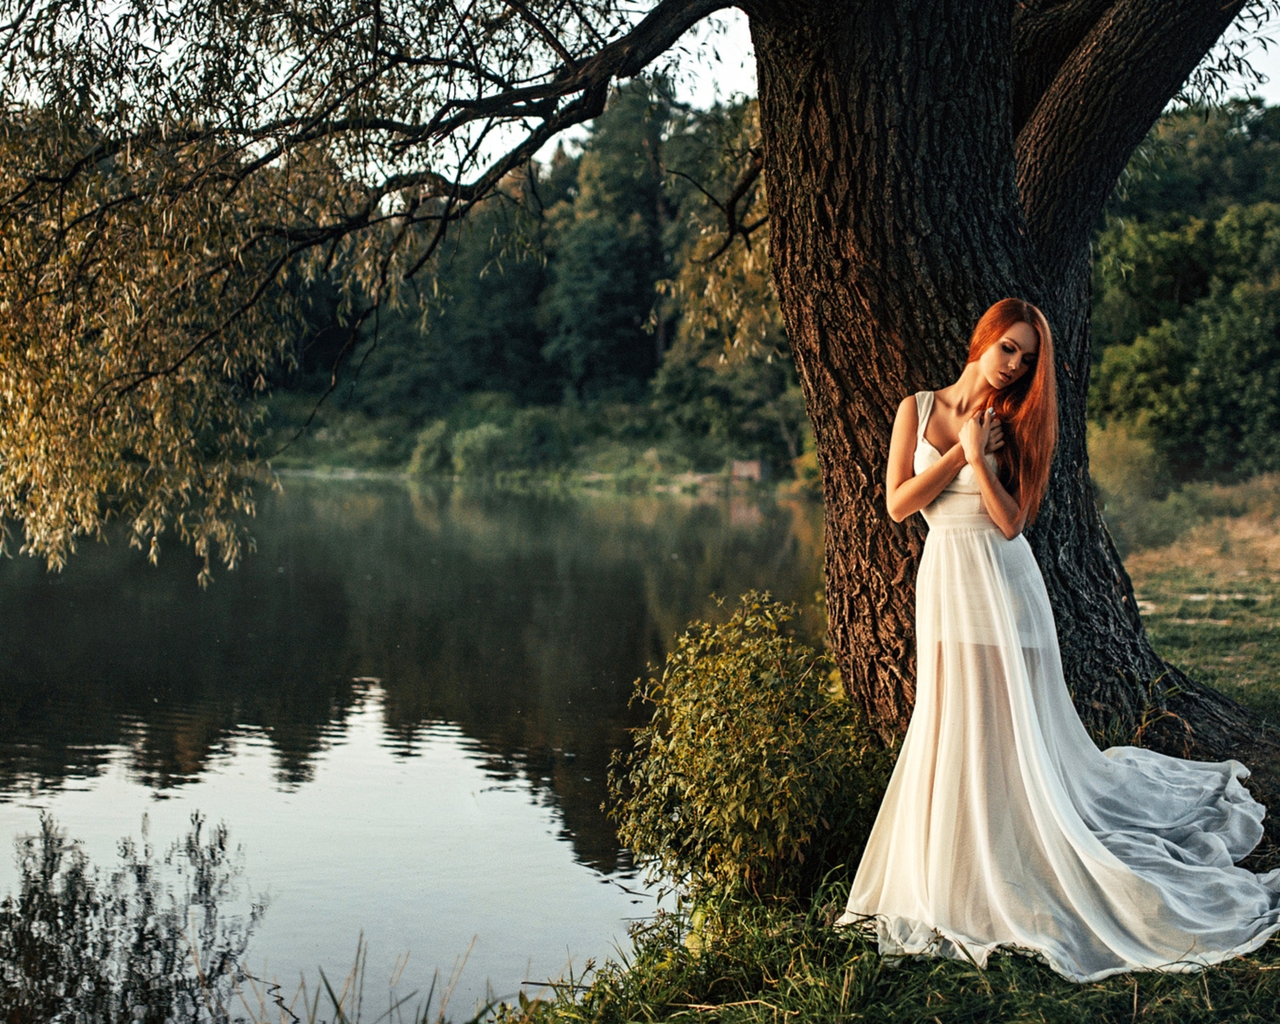 Картинка: Девушка, длинные волосы, белое платье, природа, озеро, вода, дерево, листва, отражение